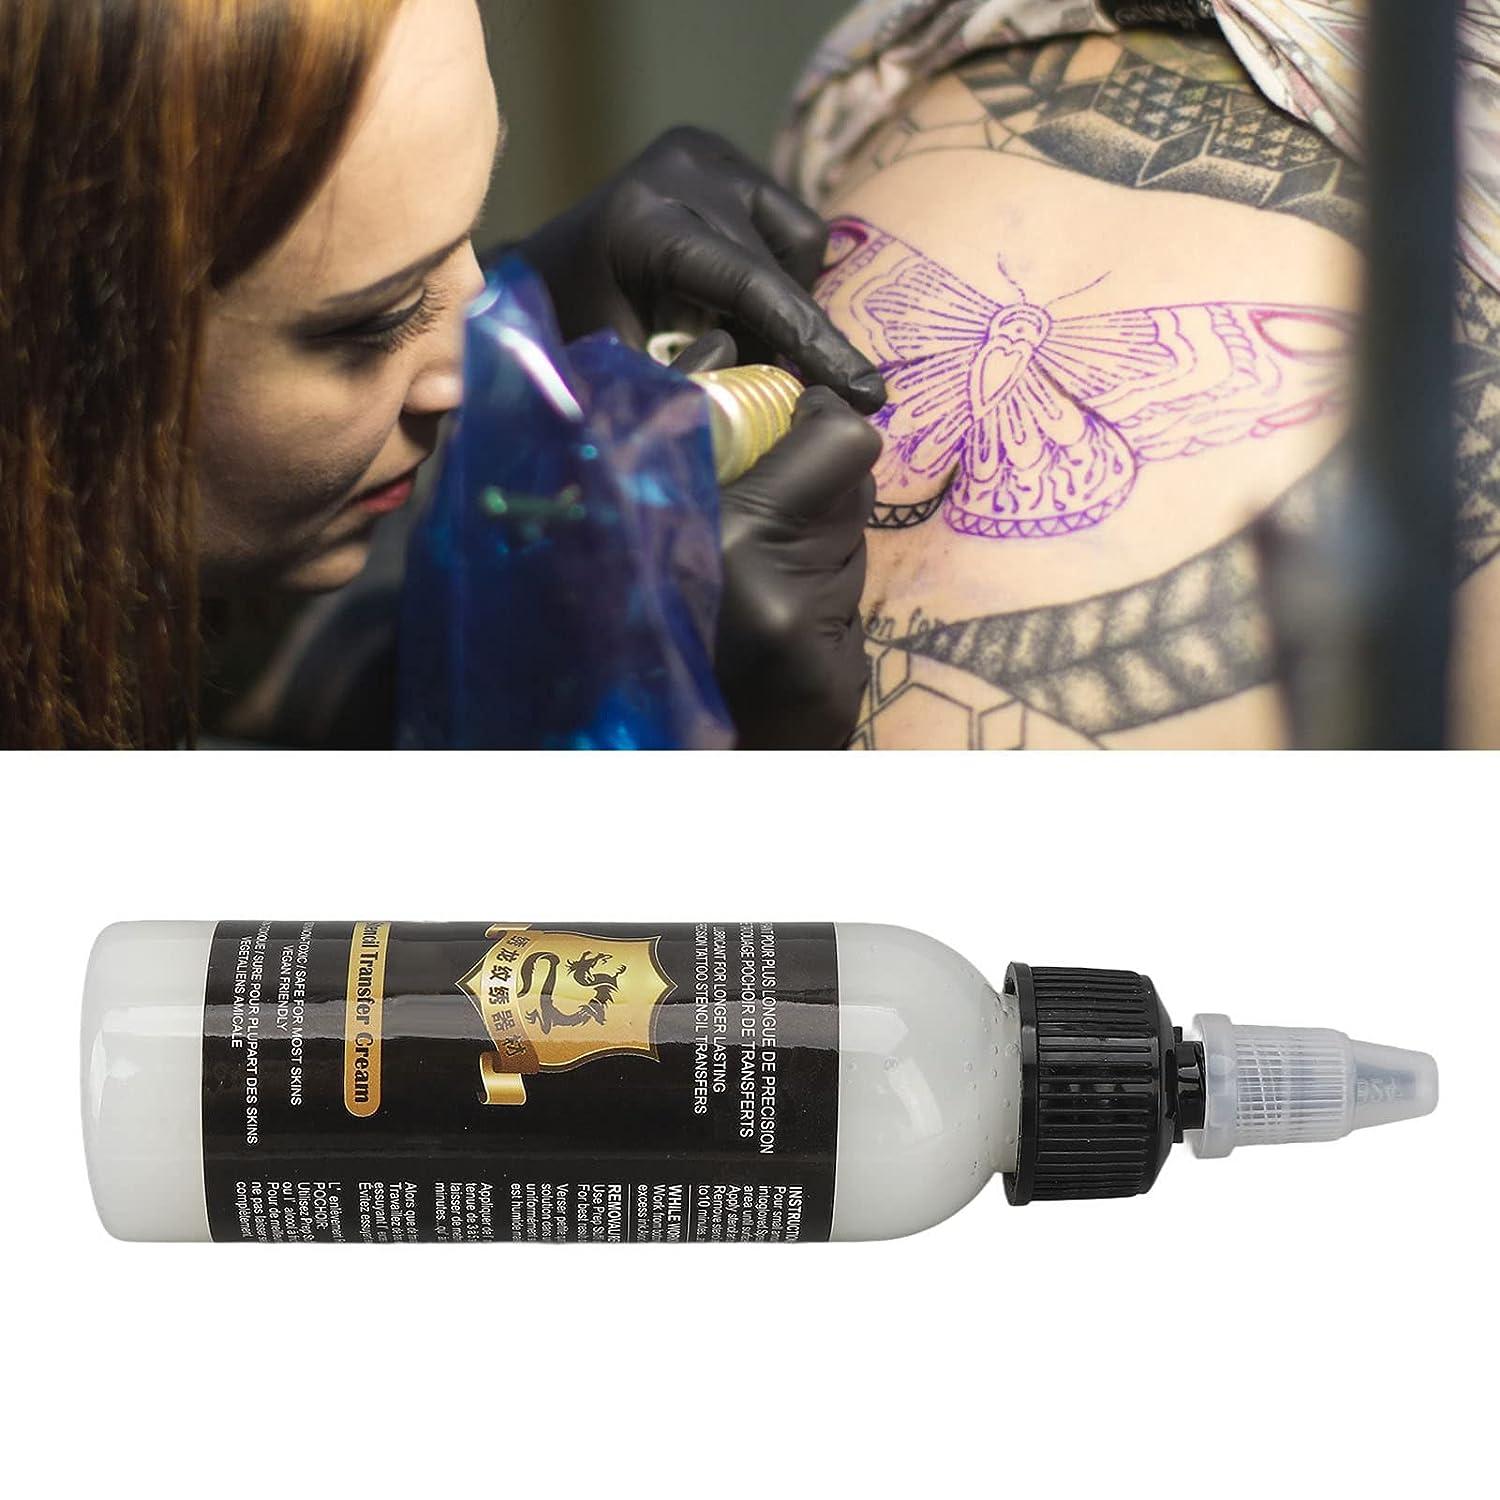 Tattoo Kit Complete Tattoo Machine Set Black Power Supply Inks Pigment With  Tattoo Needles Accessories For Tattoo Beginner - Tattoo Kits - AliExpress